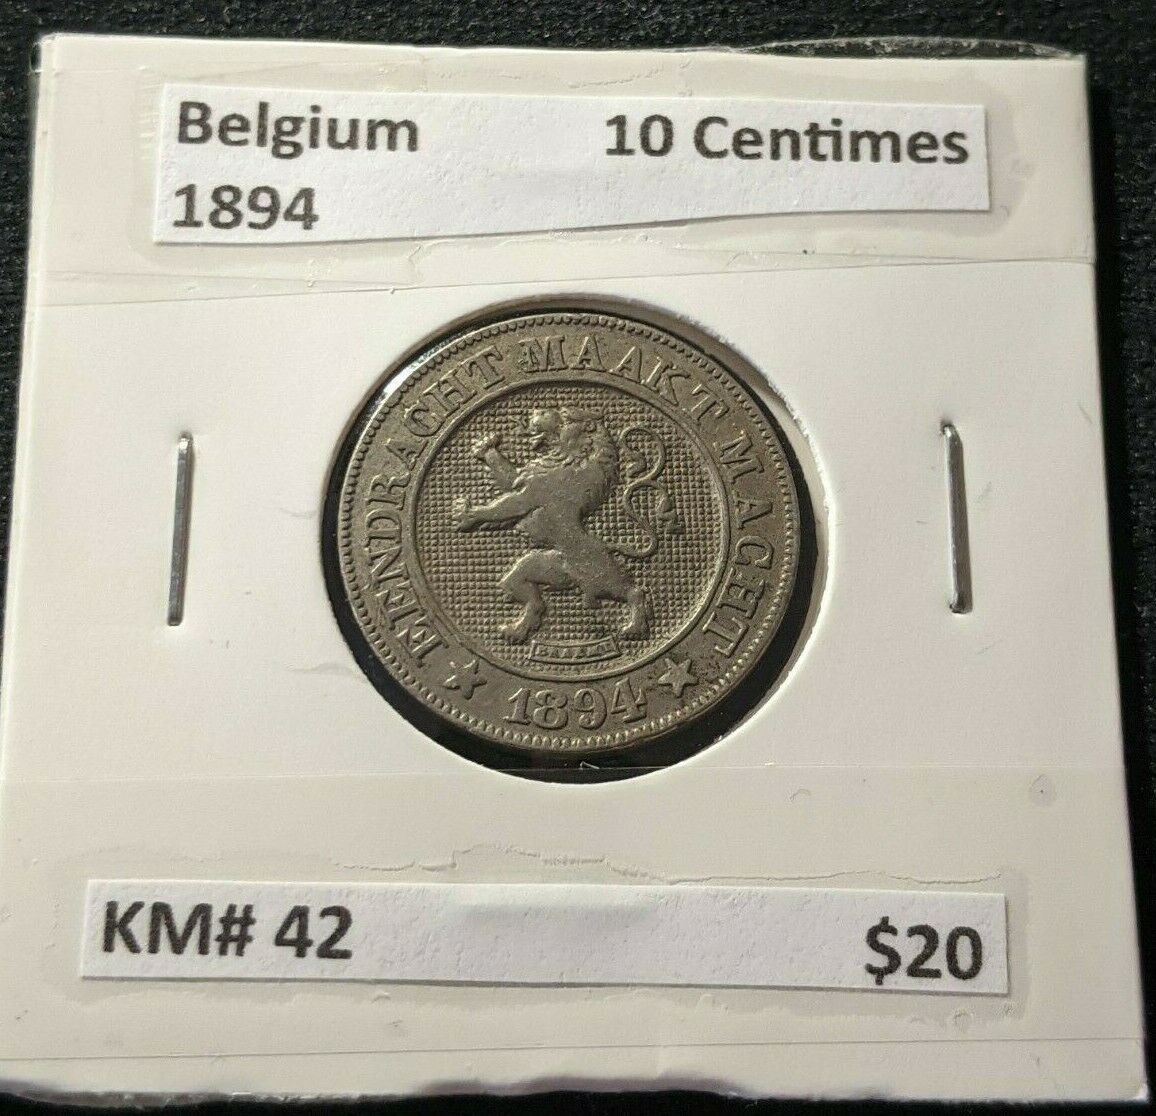 Belgium 1894 10 Centimes KM# 42  #381